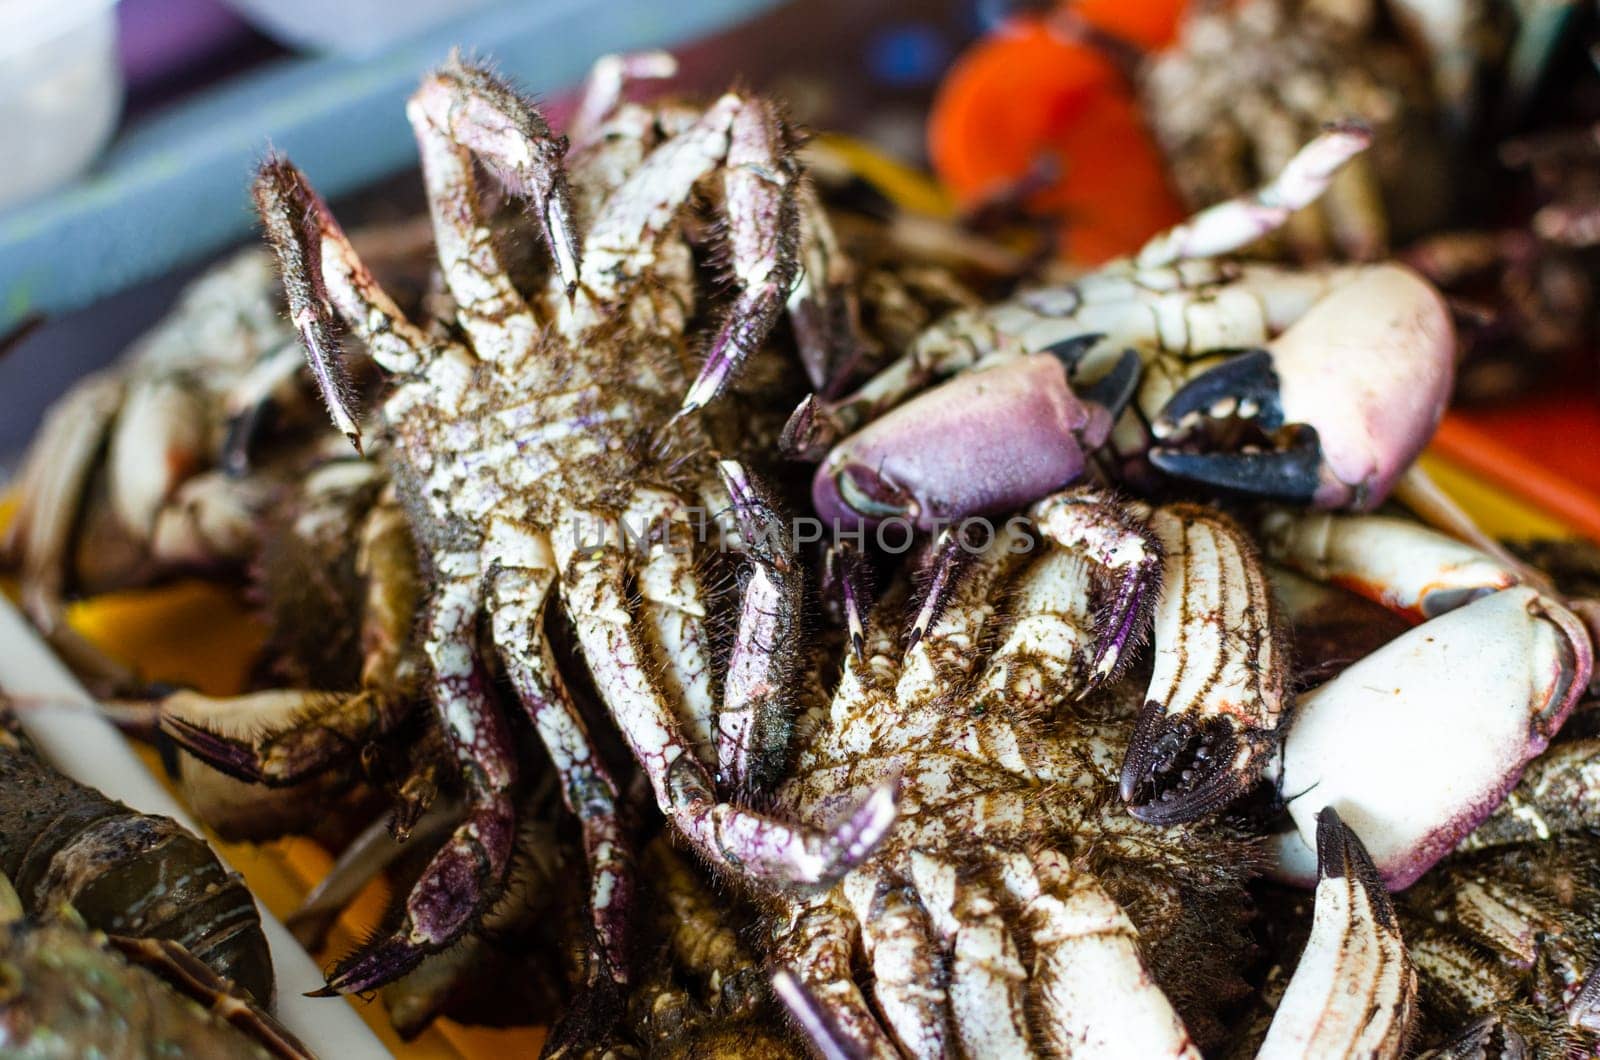 Large group of alive sea crabs bundled for sale at supermarket